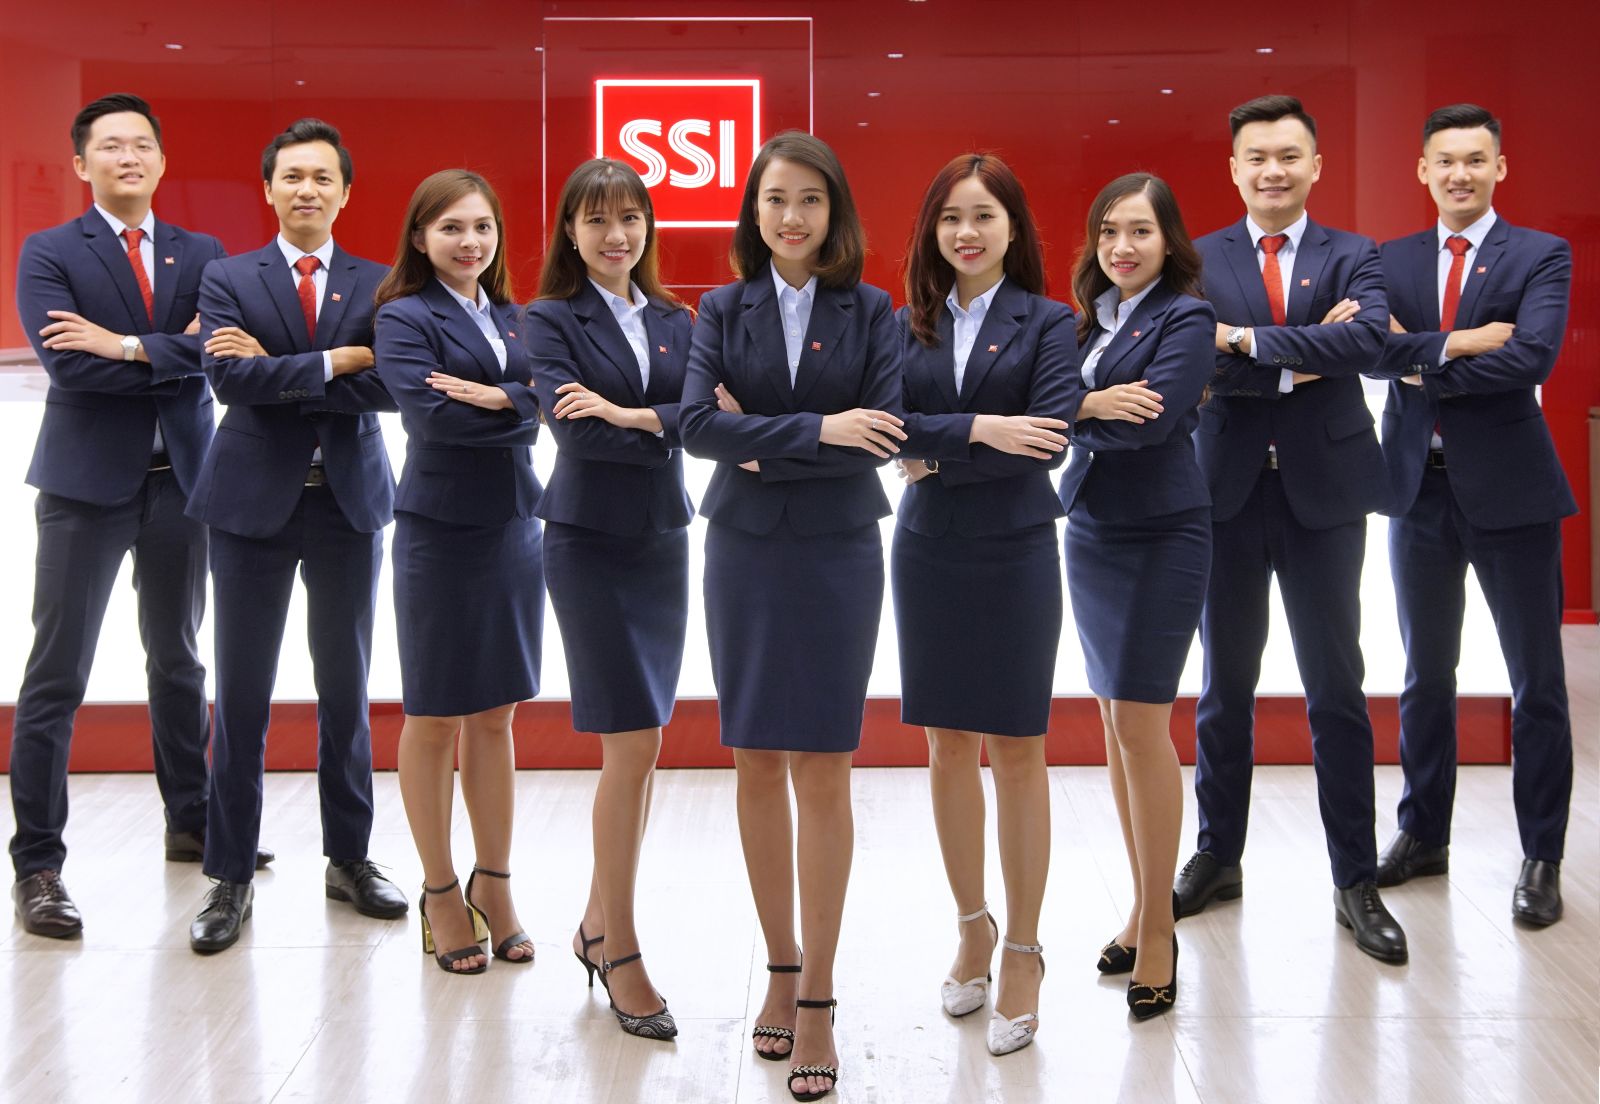 Giới thiệu về SSI - Công ty cổ phần Chứng khoán SSI